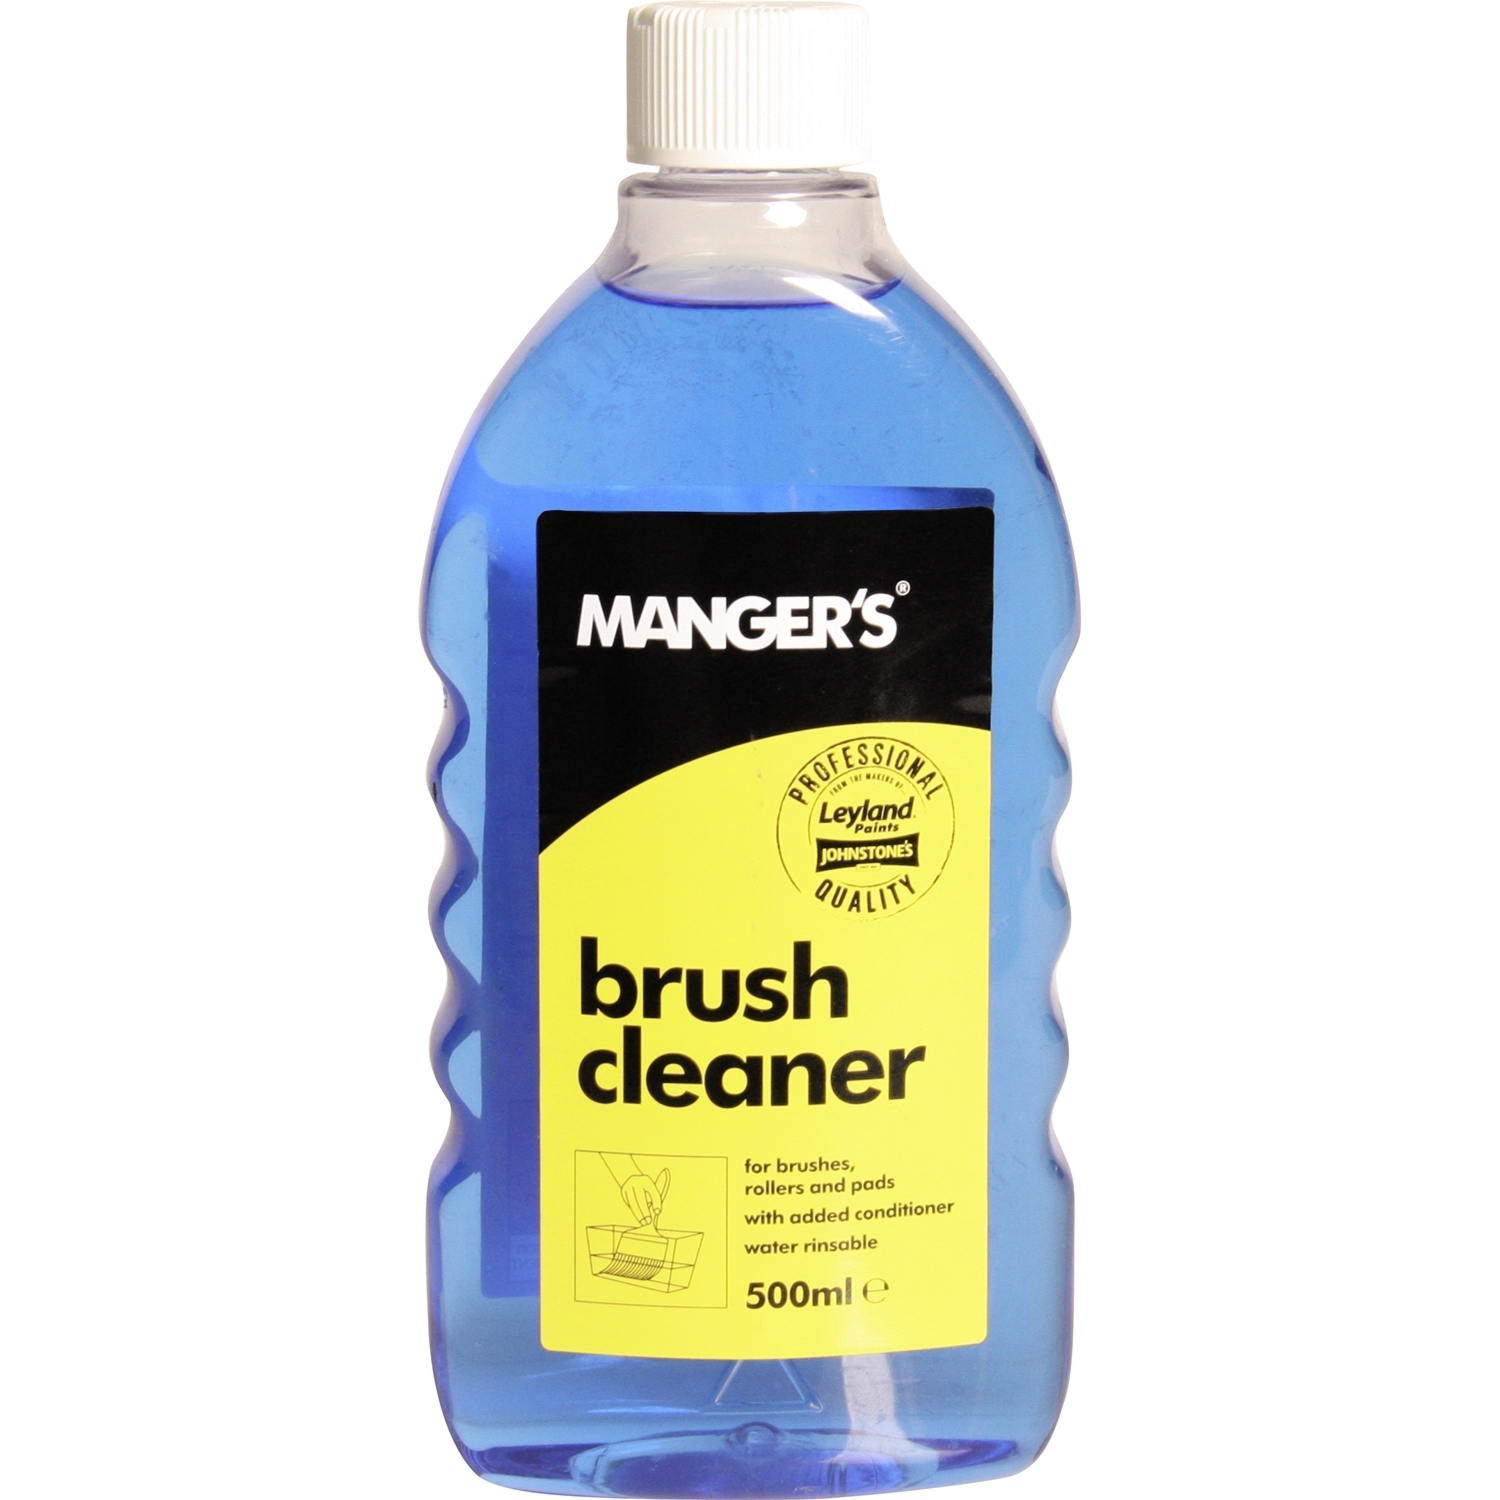 Manger's Brush Cleaner 500ml Image